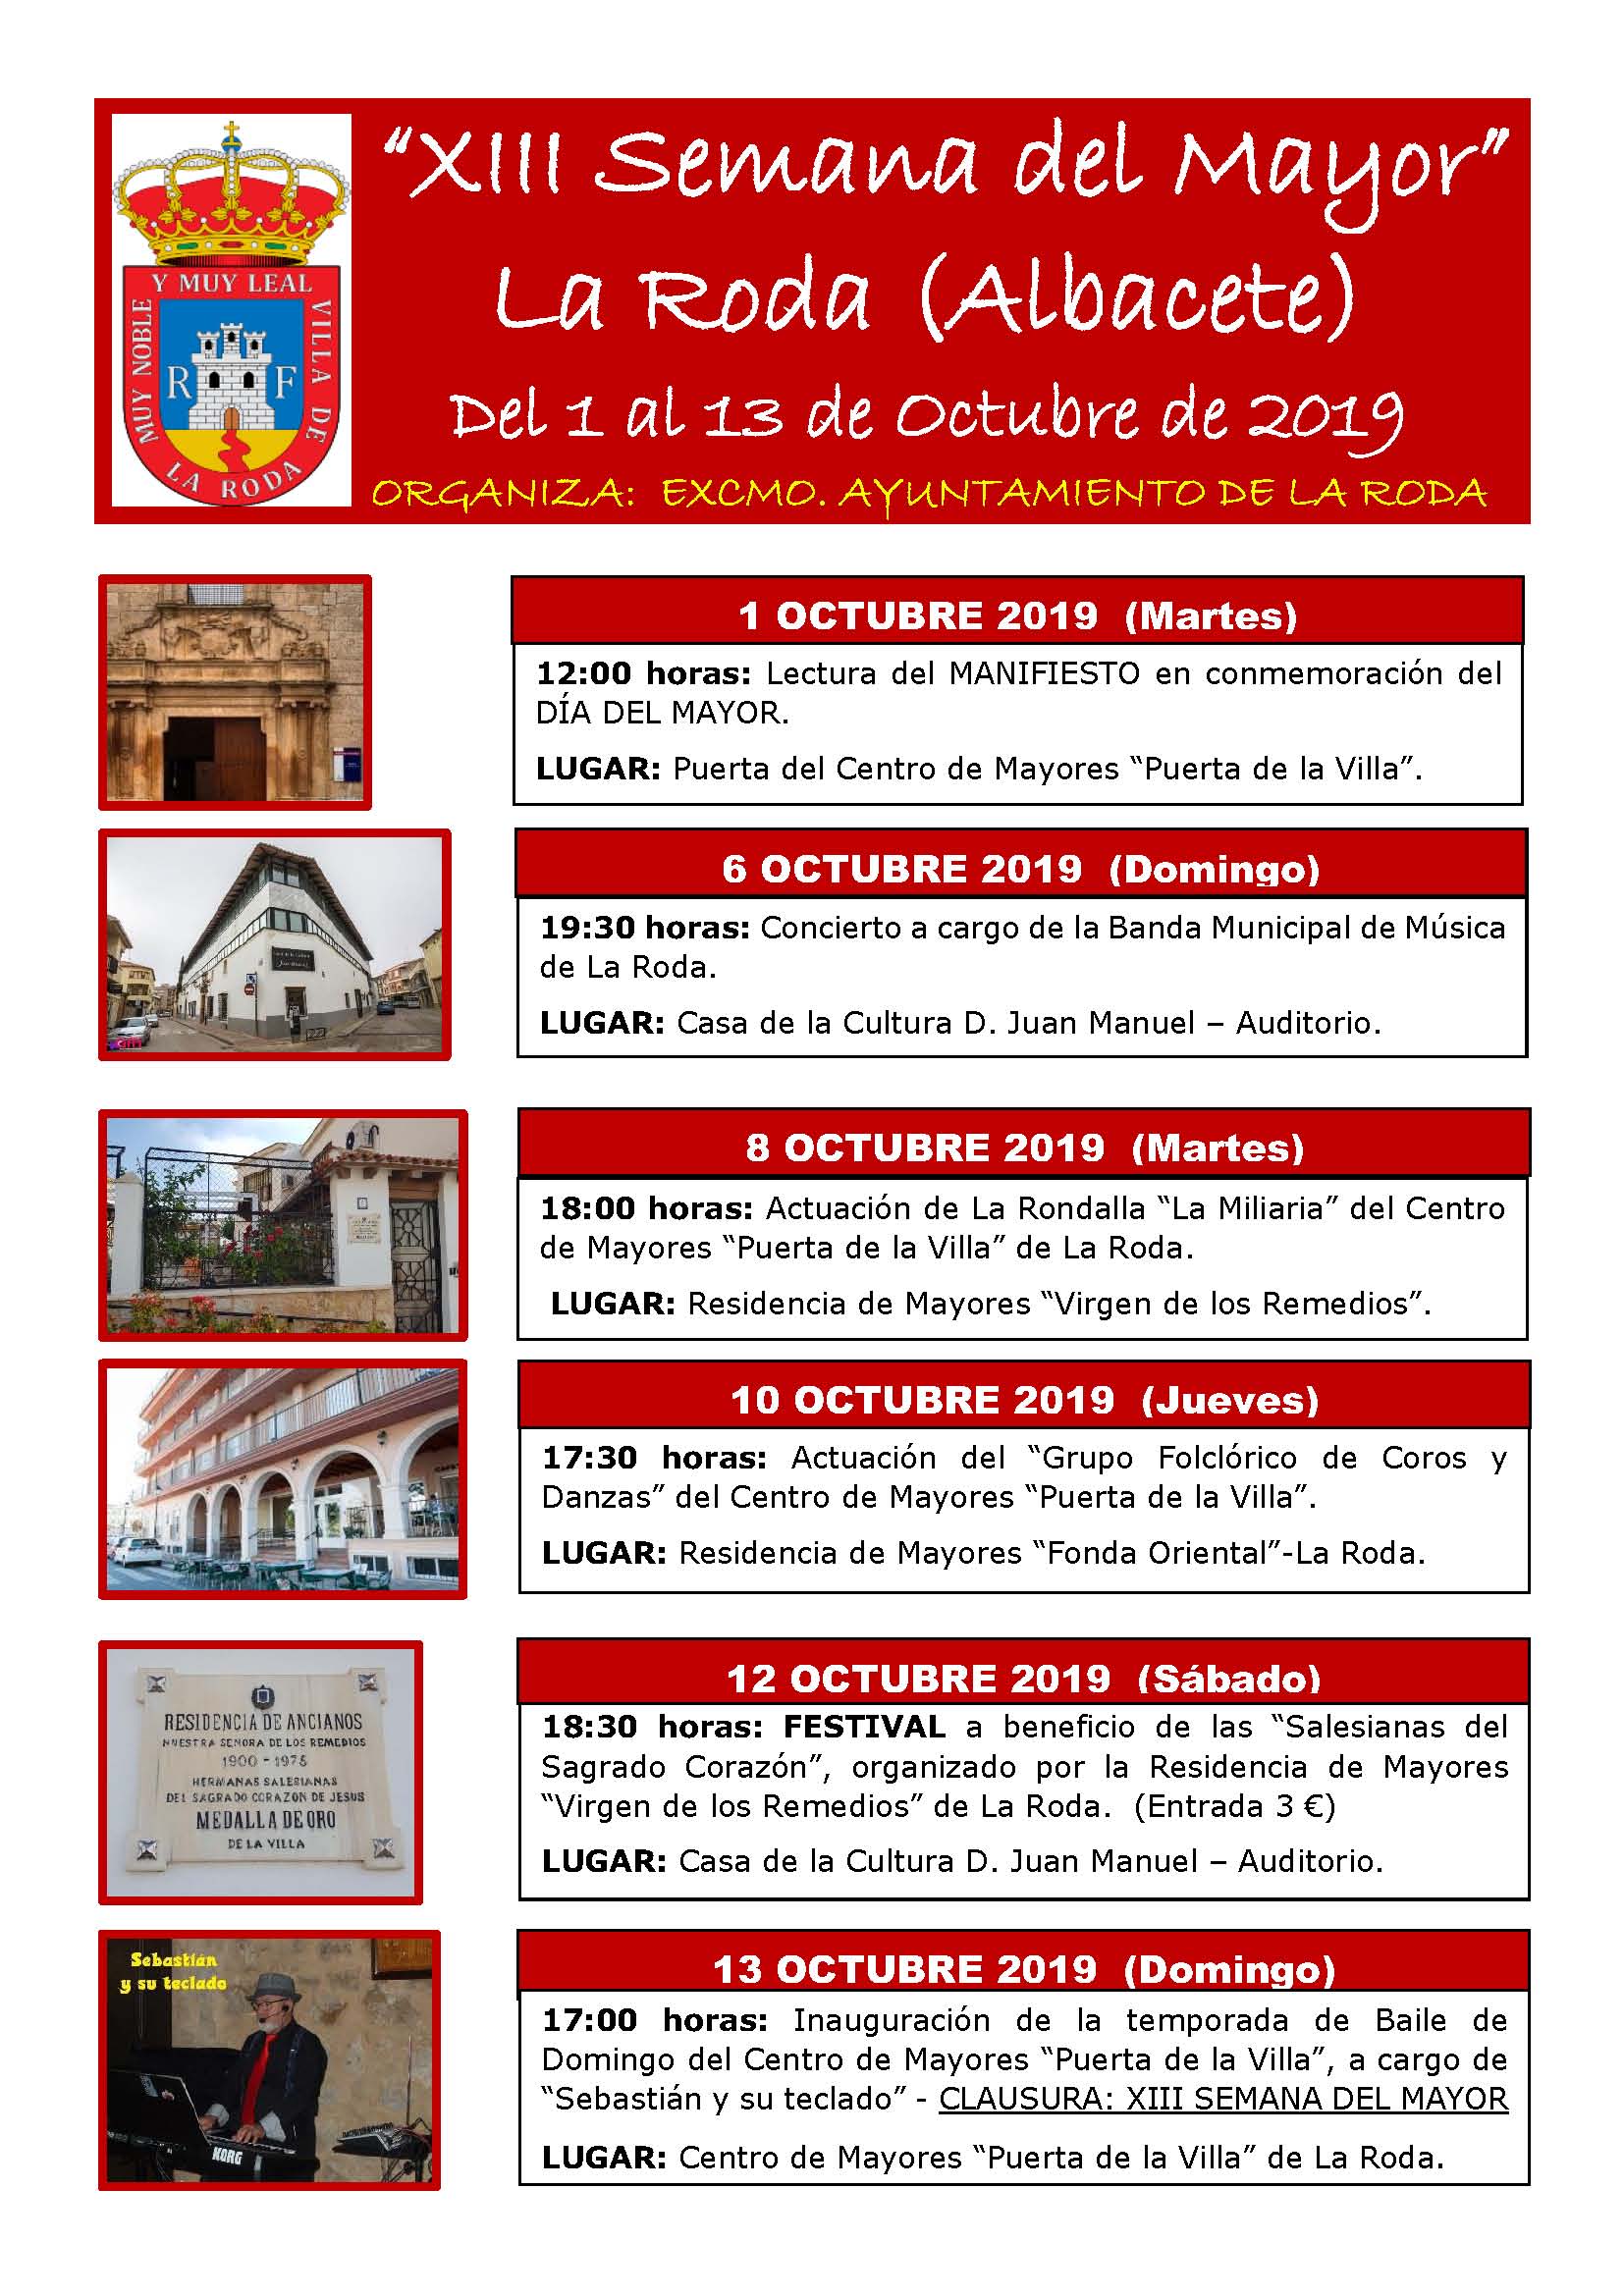 La Roda acogerá la XIII Semana del Mayor del 1 al 13 de octubre